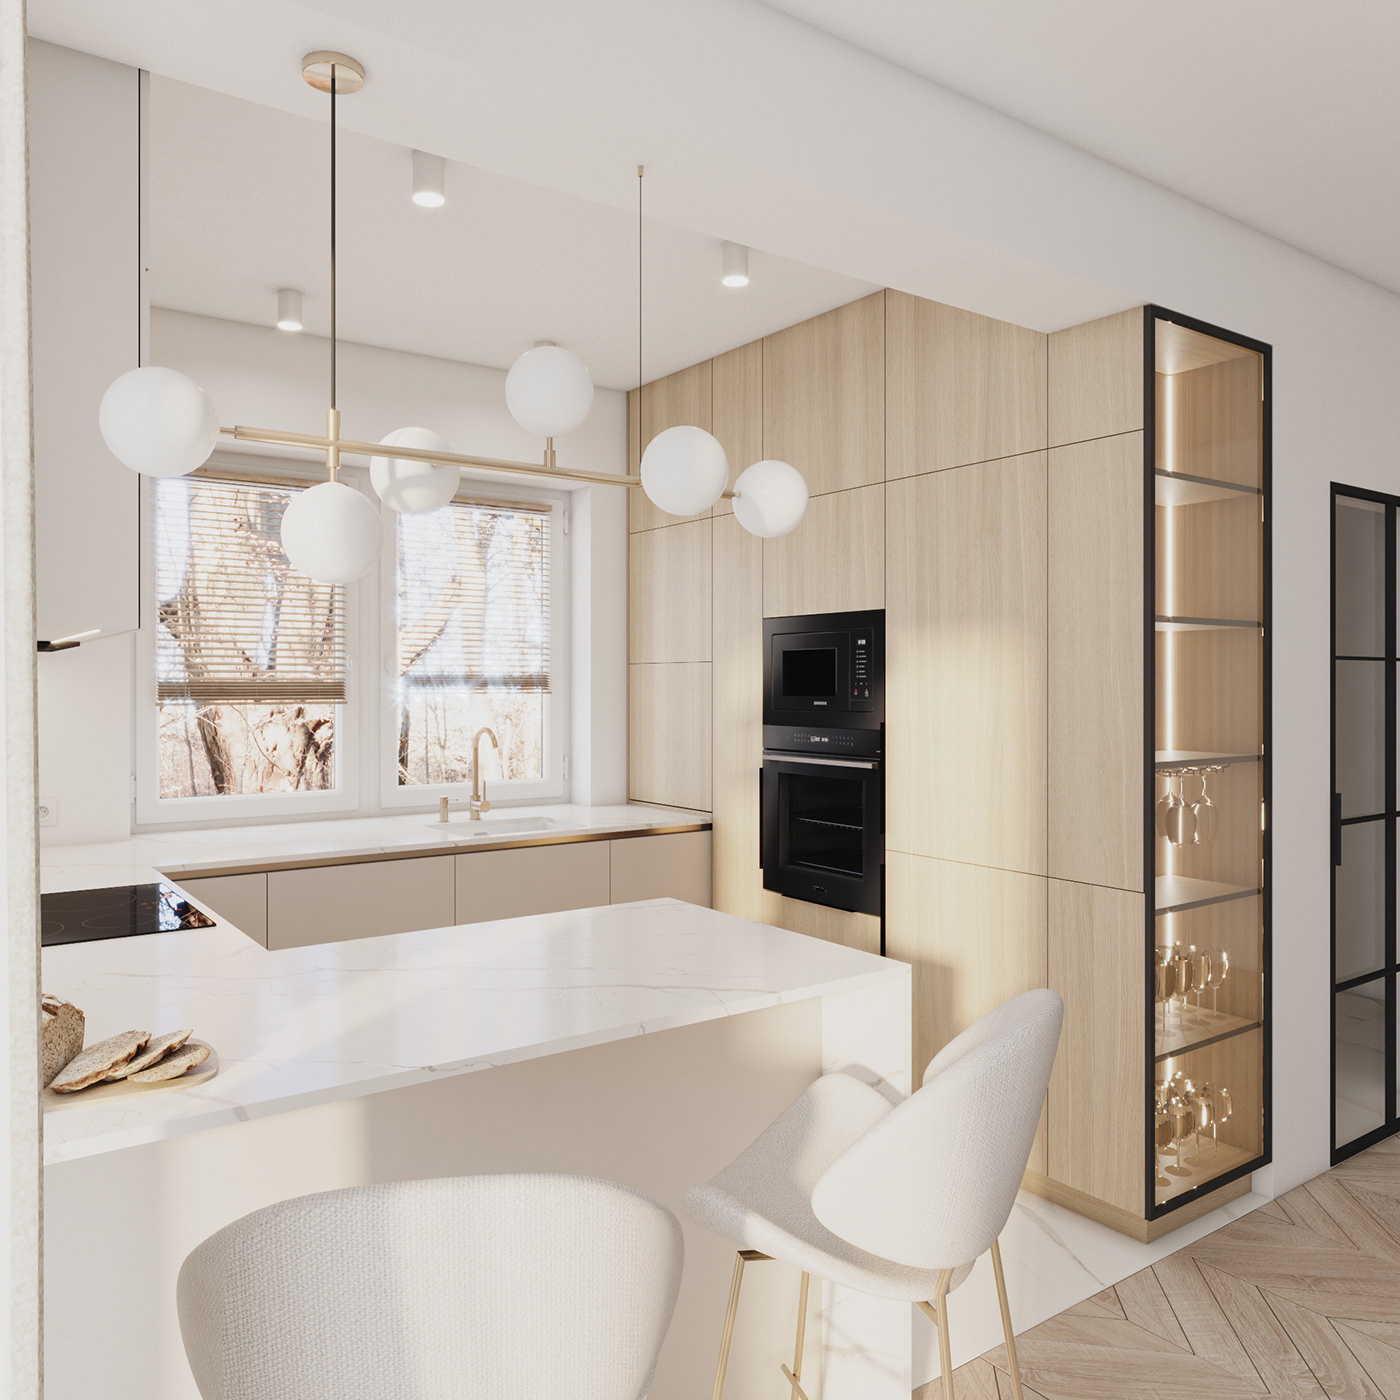 kitchen interiordesign Render visualization interior design  modern kitchendesign